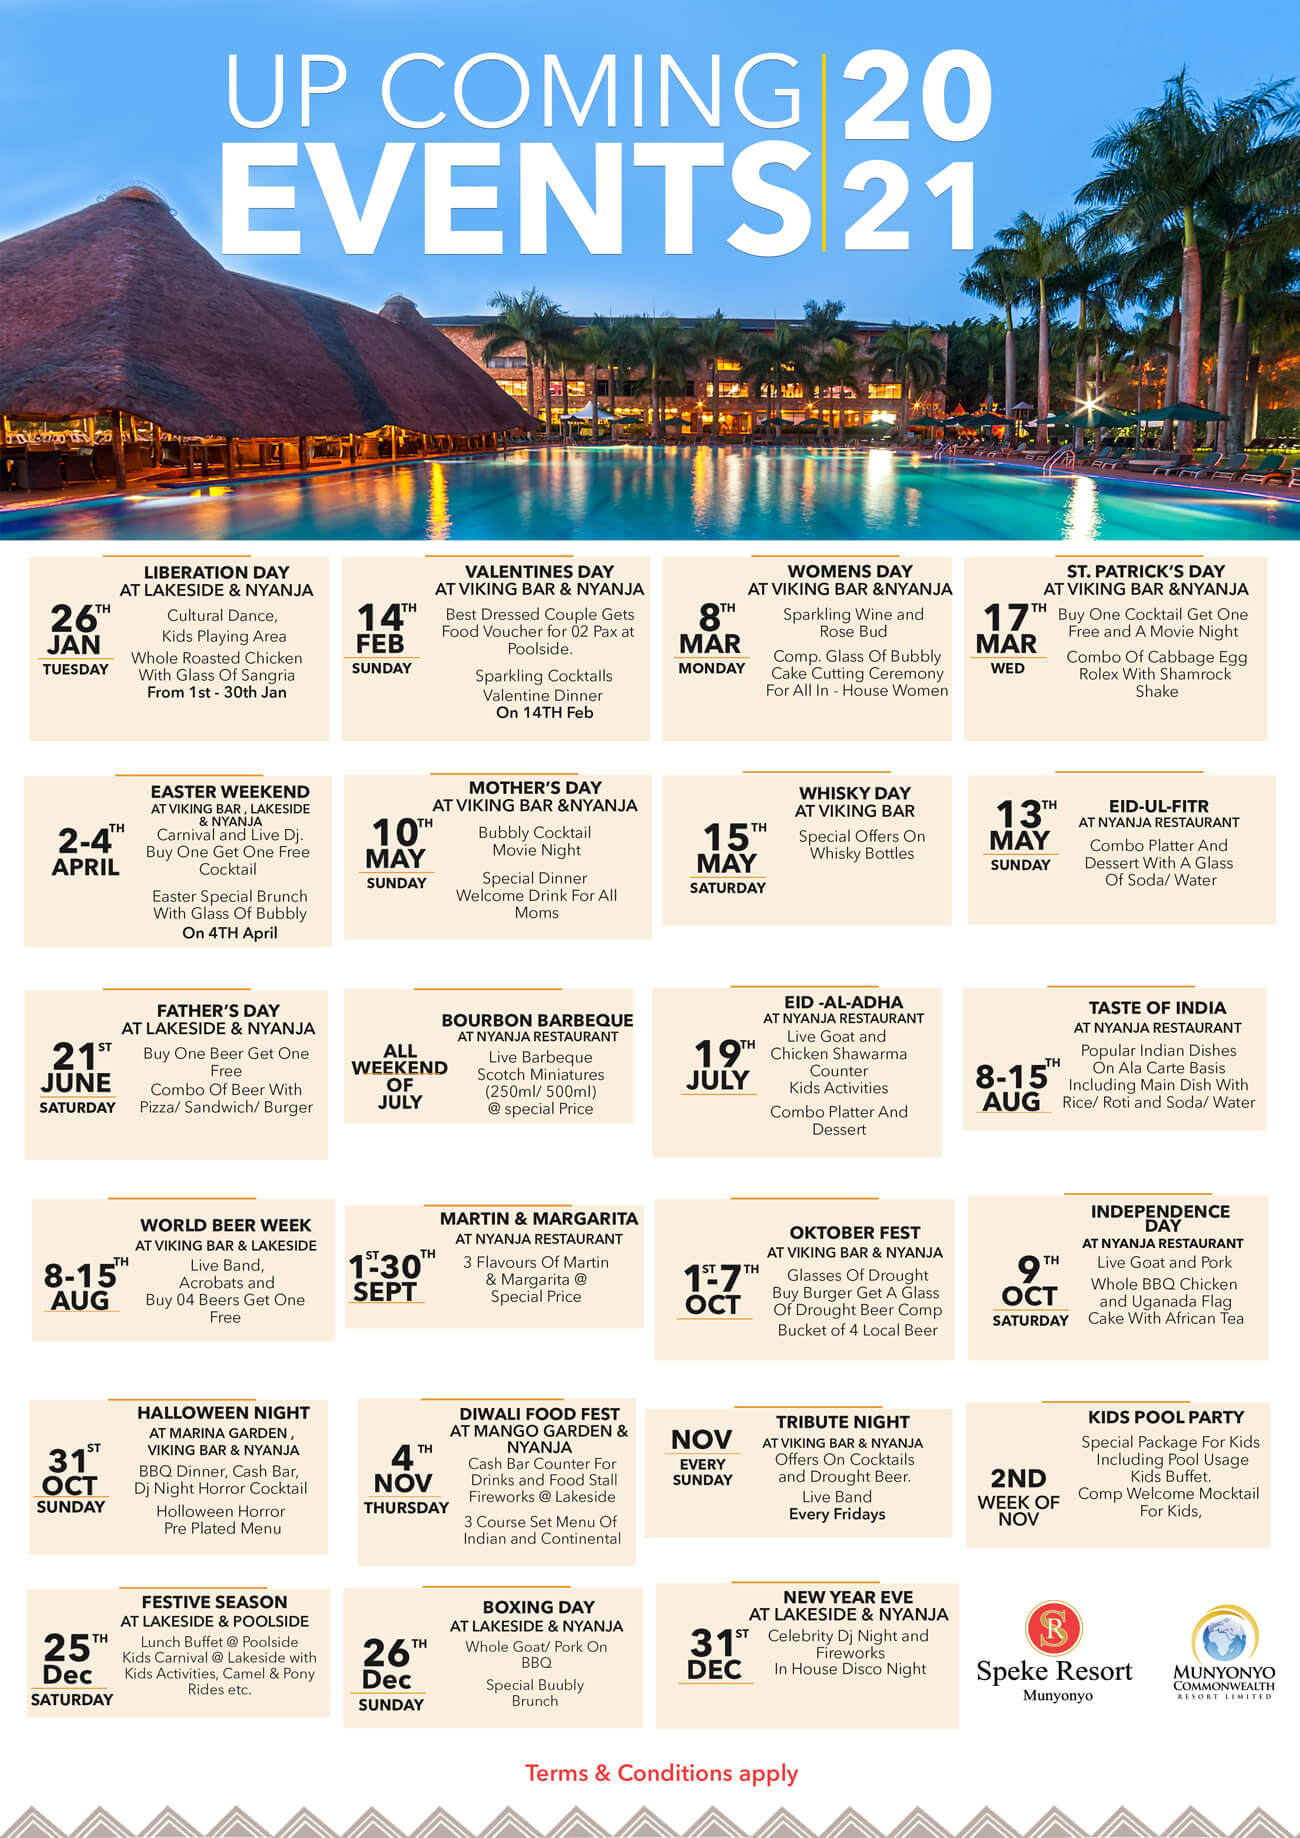 Event Calendar Speke Resort Munyonyo